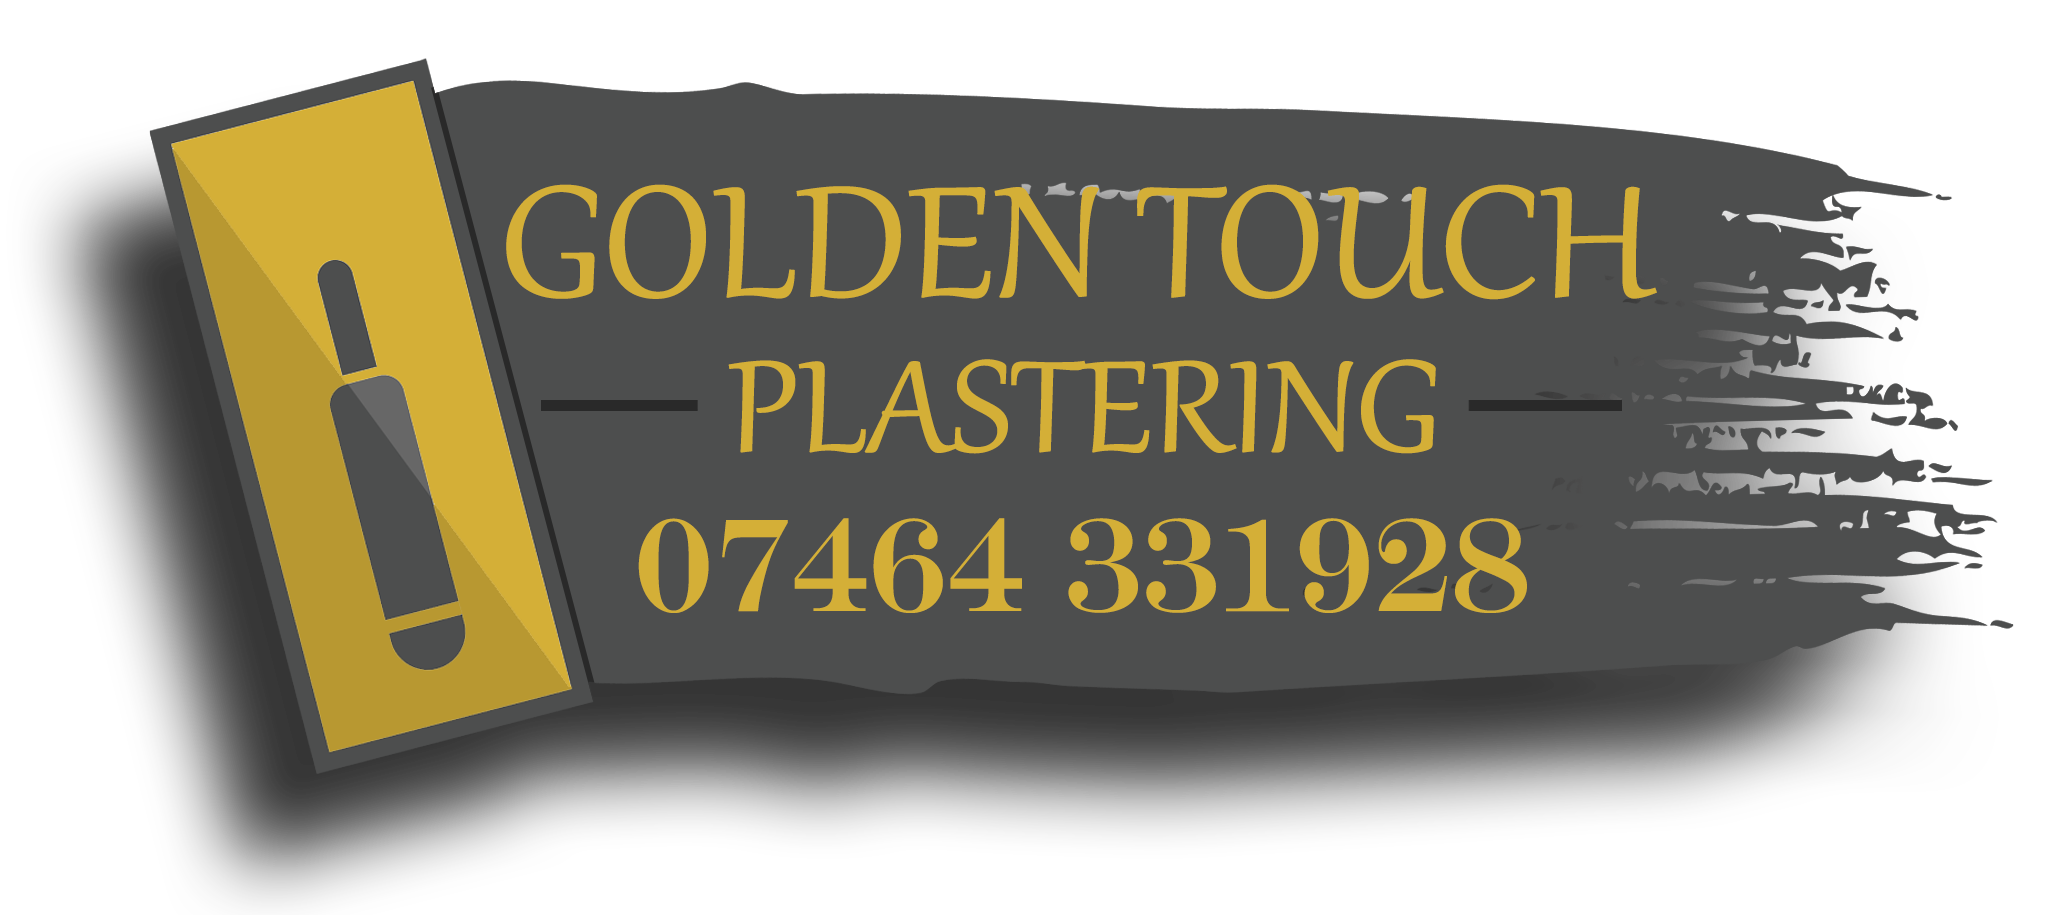 Golden Touch Plastering logo